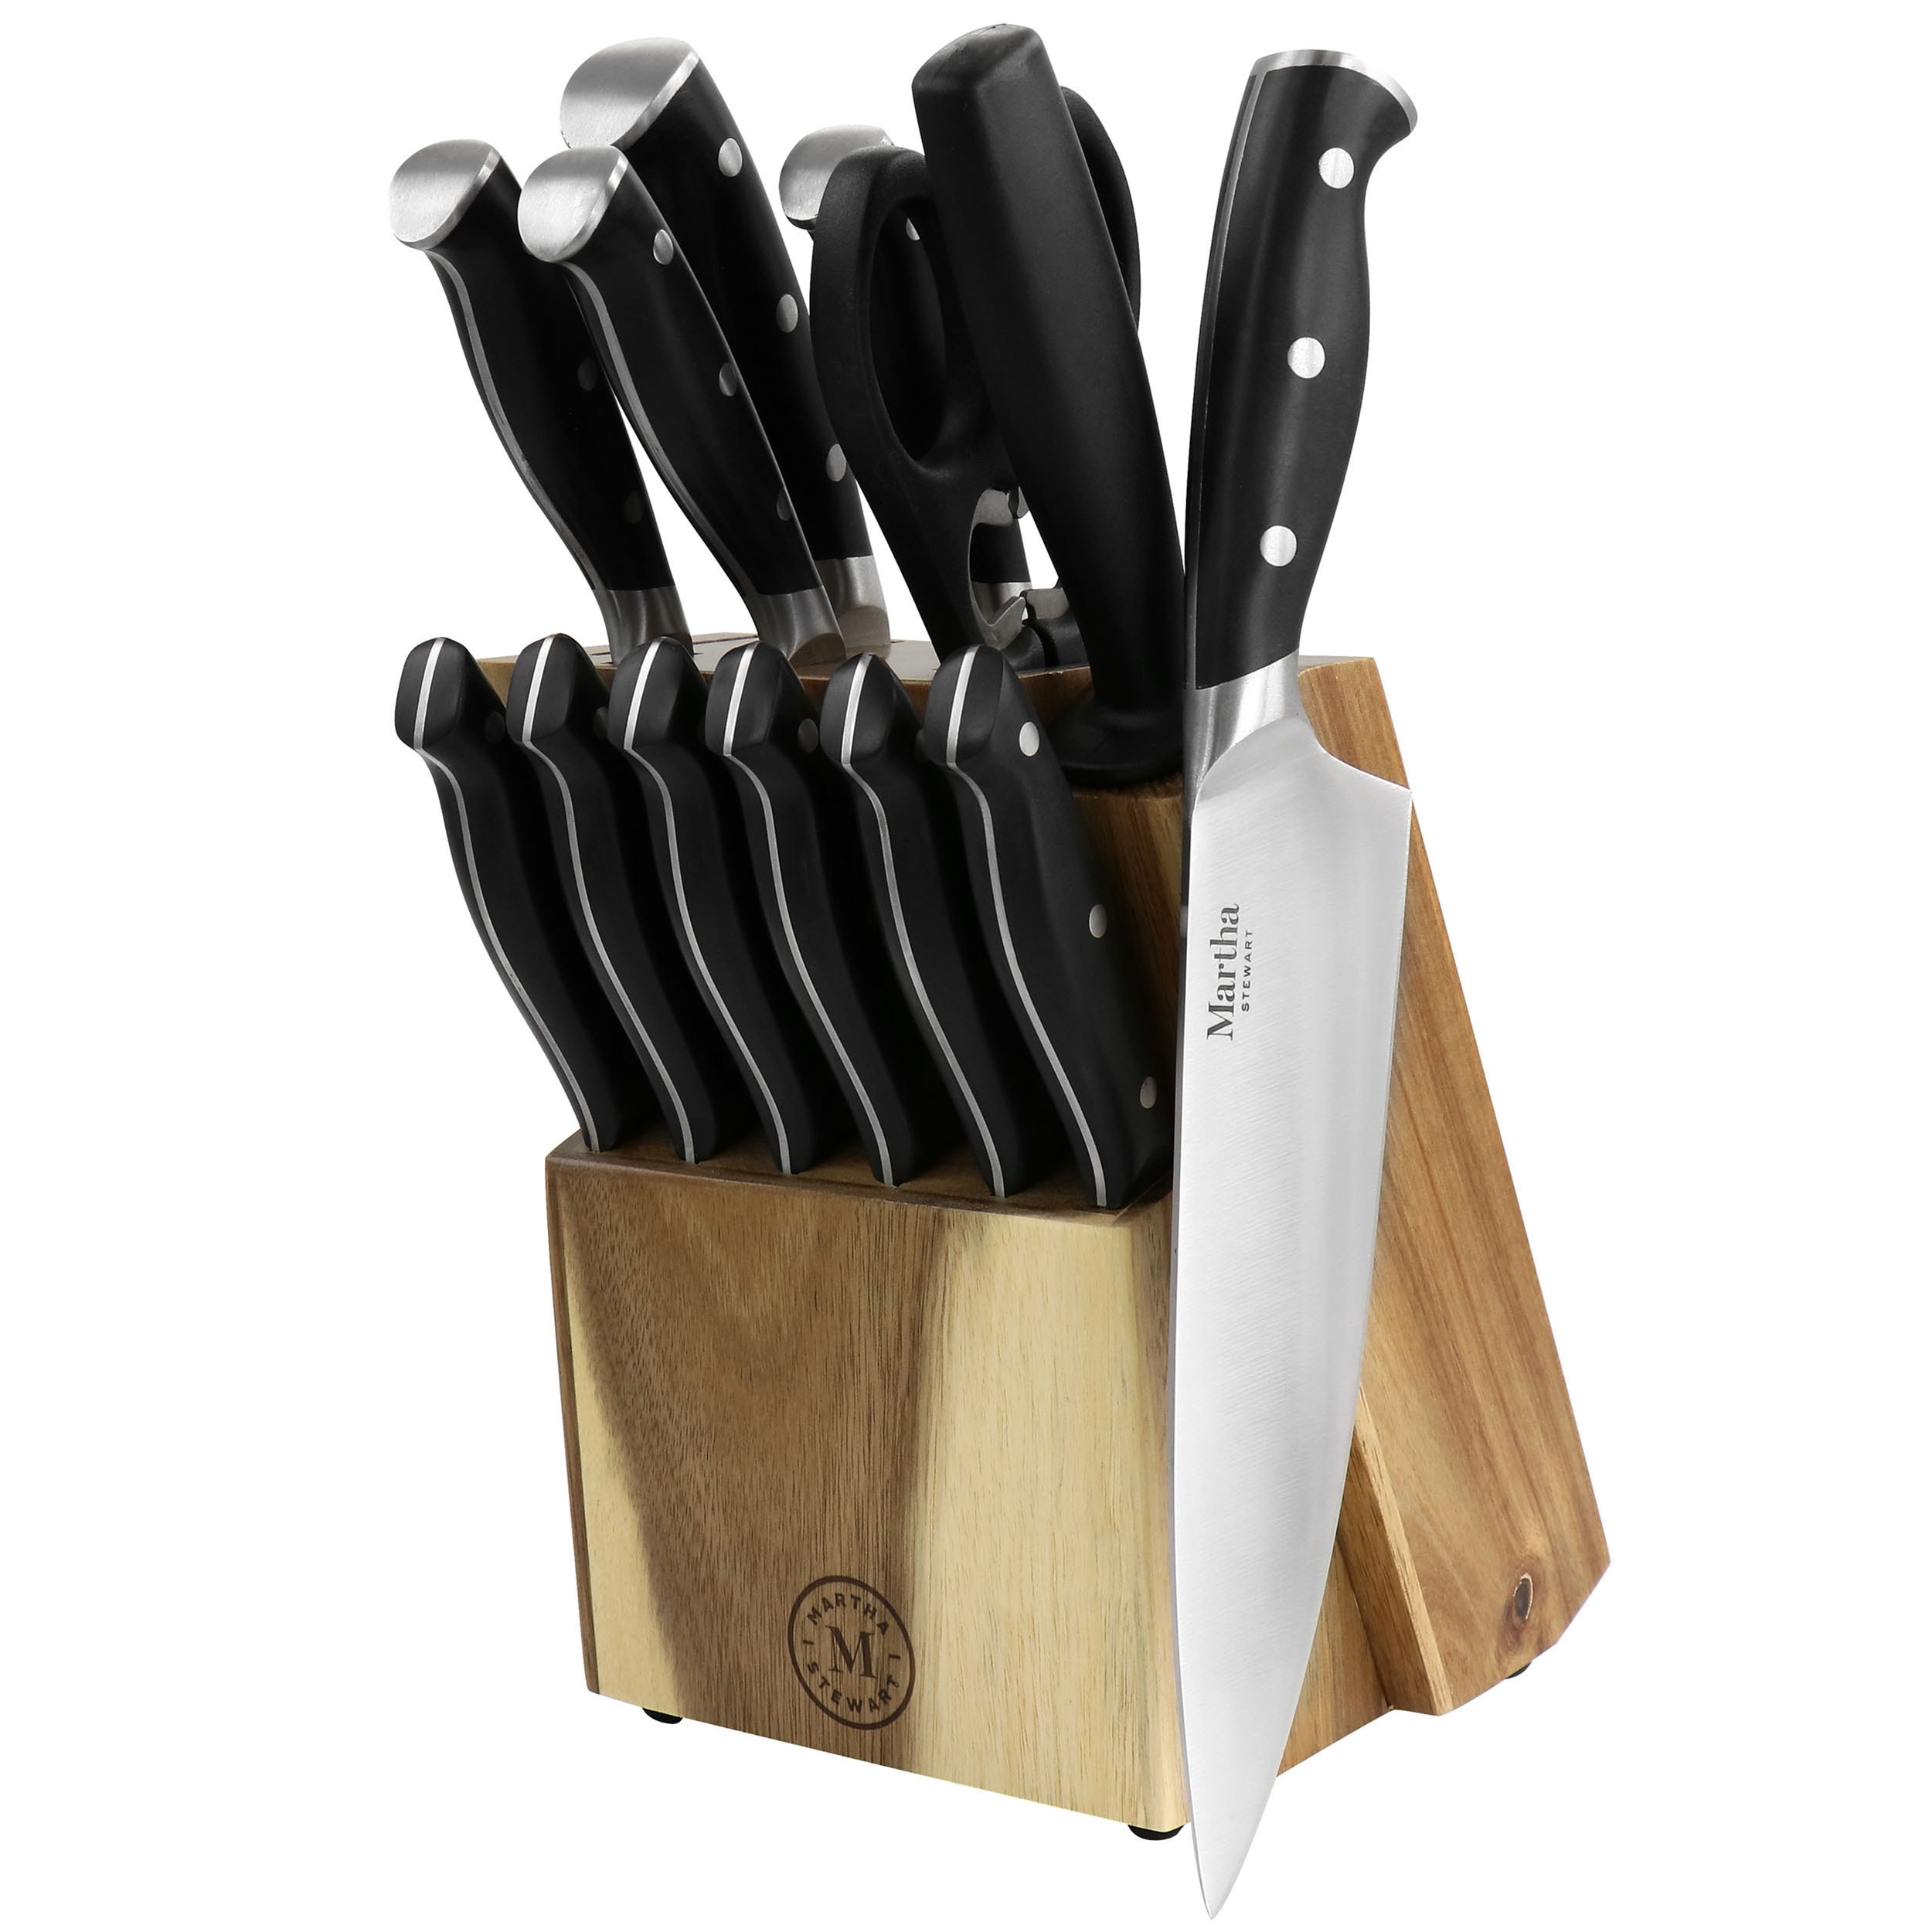 Martha Stewart Everyday 4 Piece Stainless Steel Cutlery Set in Black